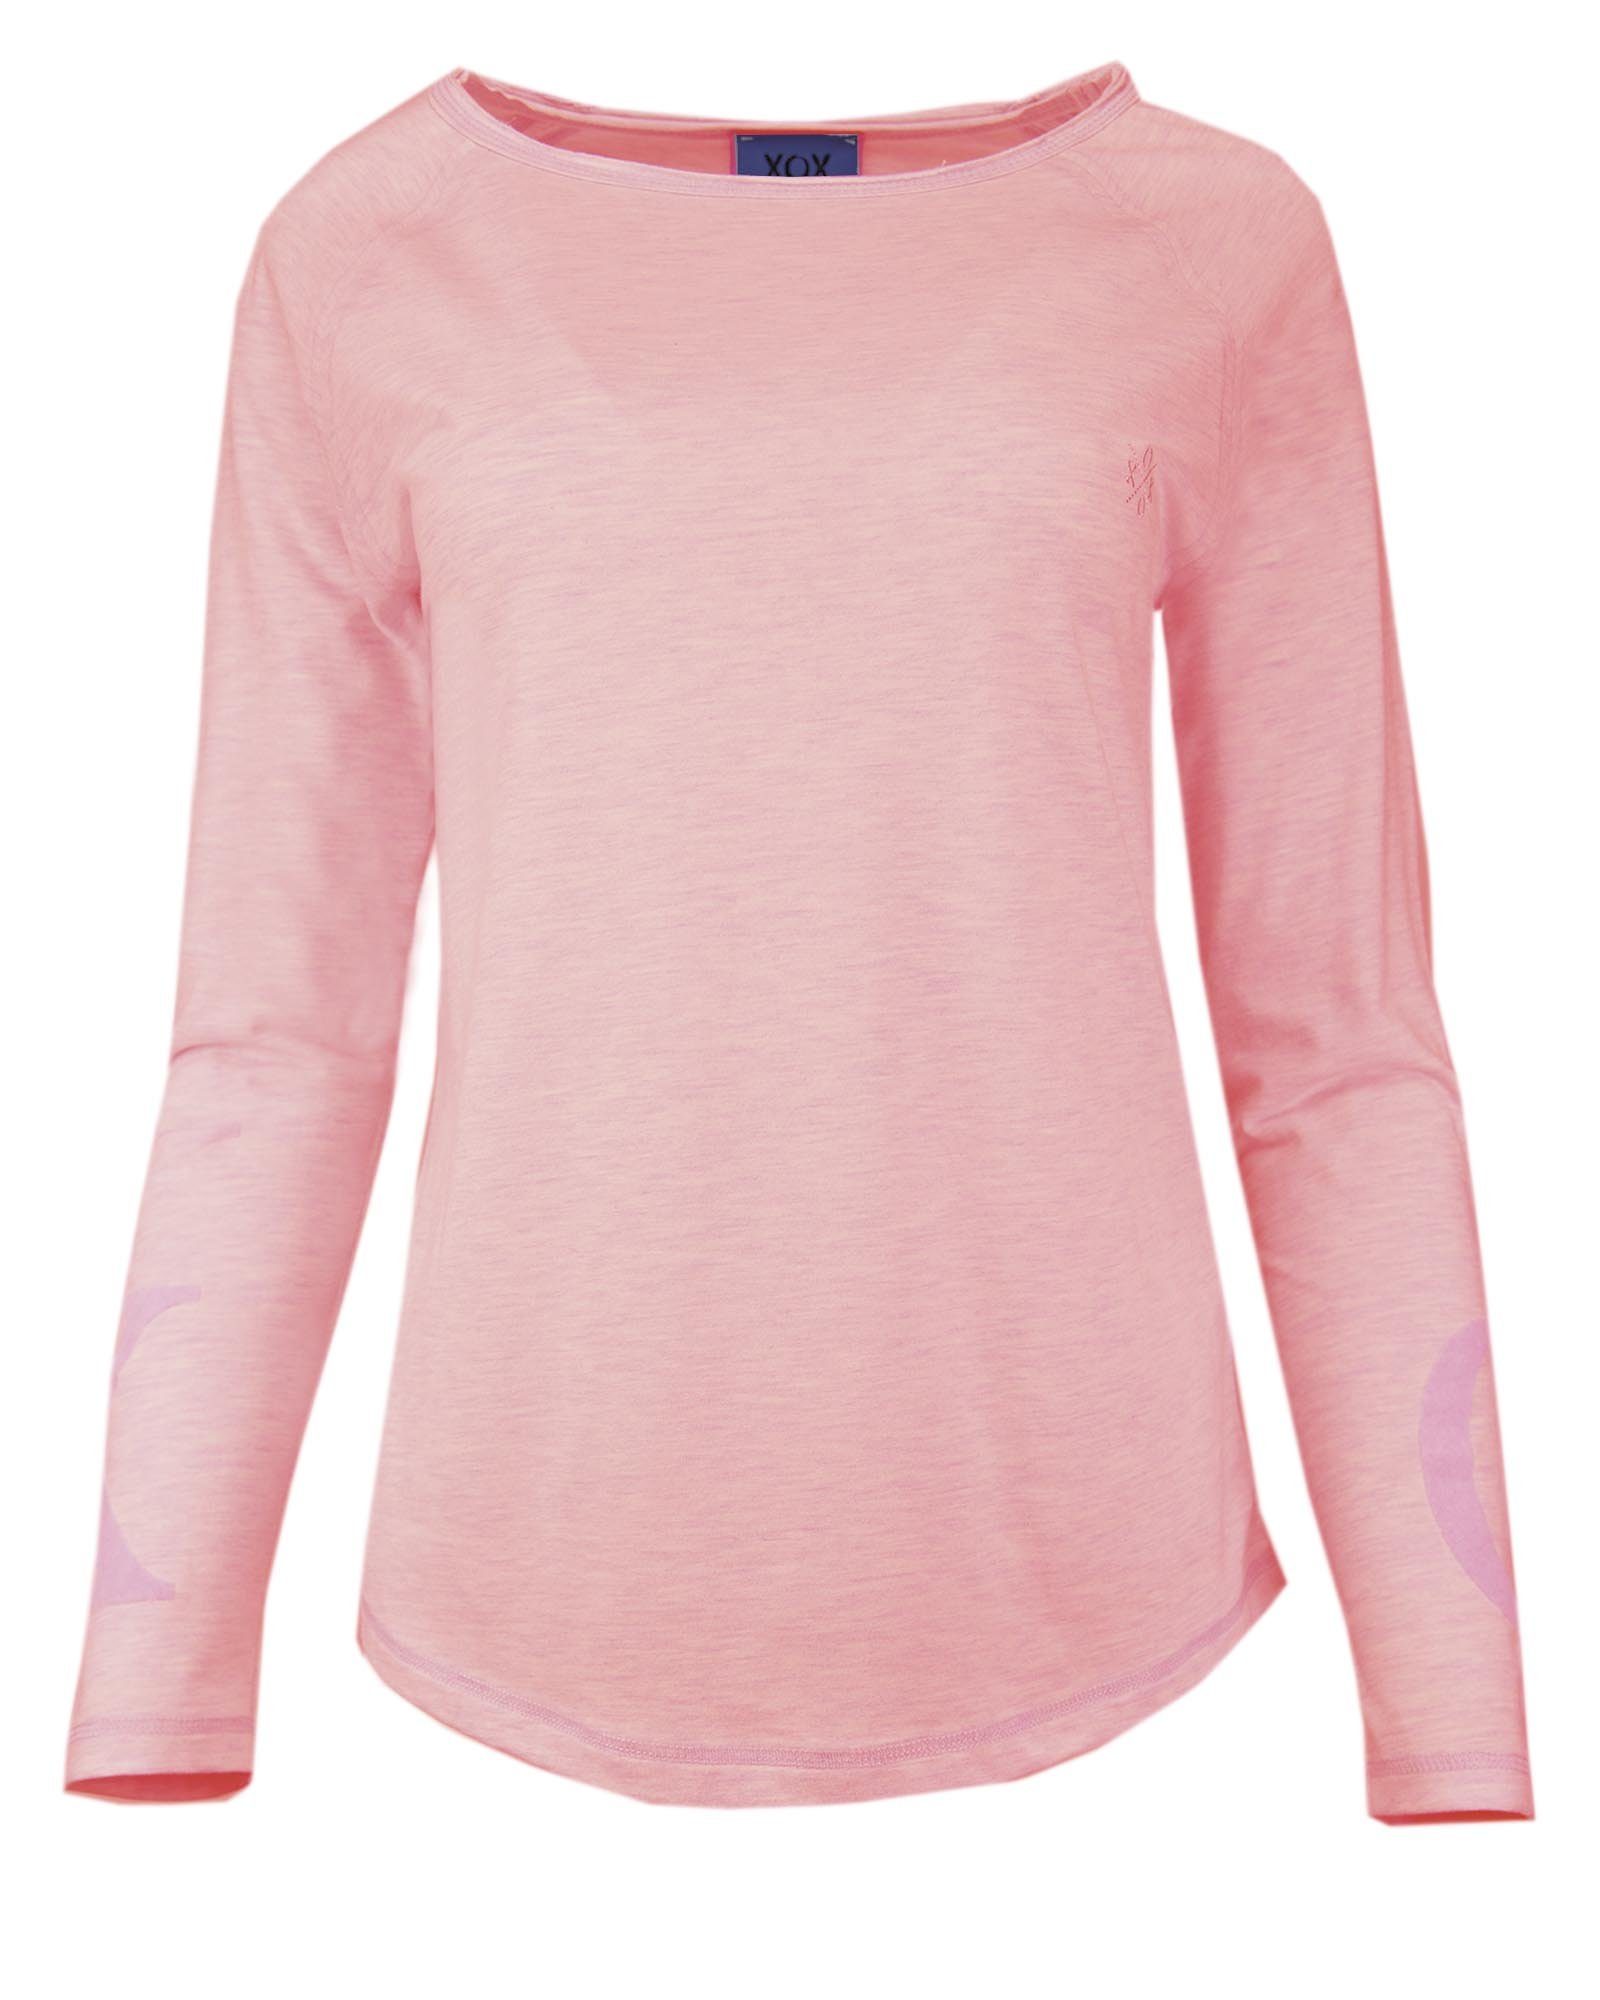 XOX Hoodie XOX Shirt Rundhals Ausschnitt, Longsleeve, rosé - Fair Trade, Oberteil, Shirt, Damenmode